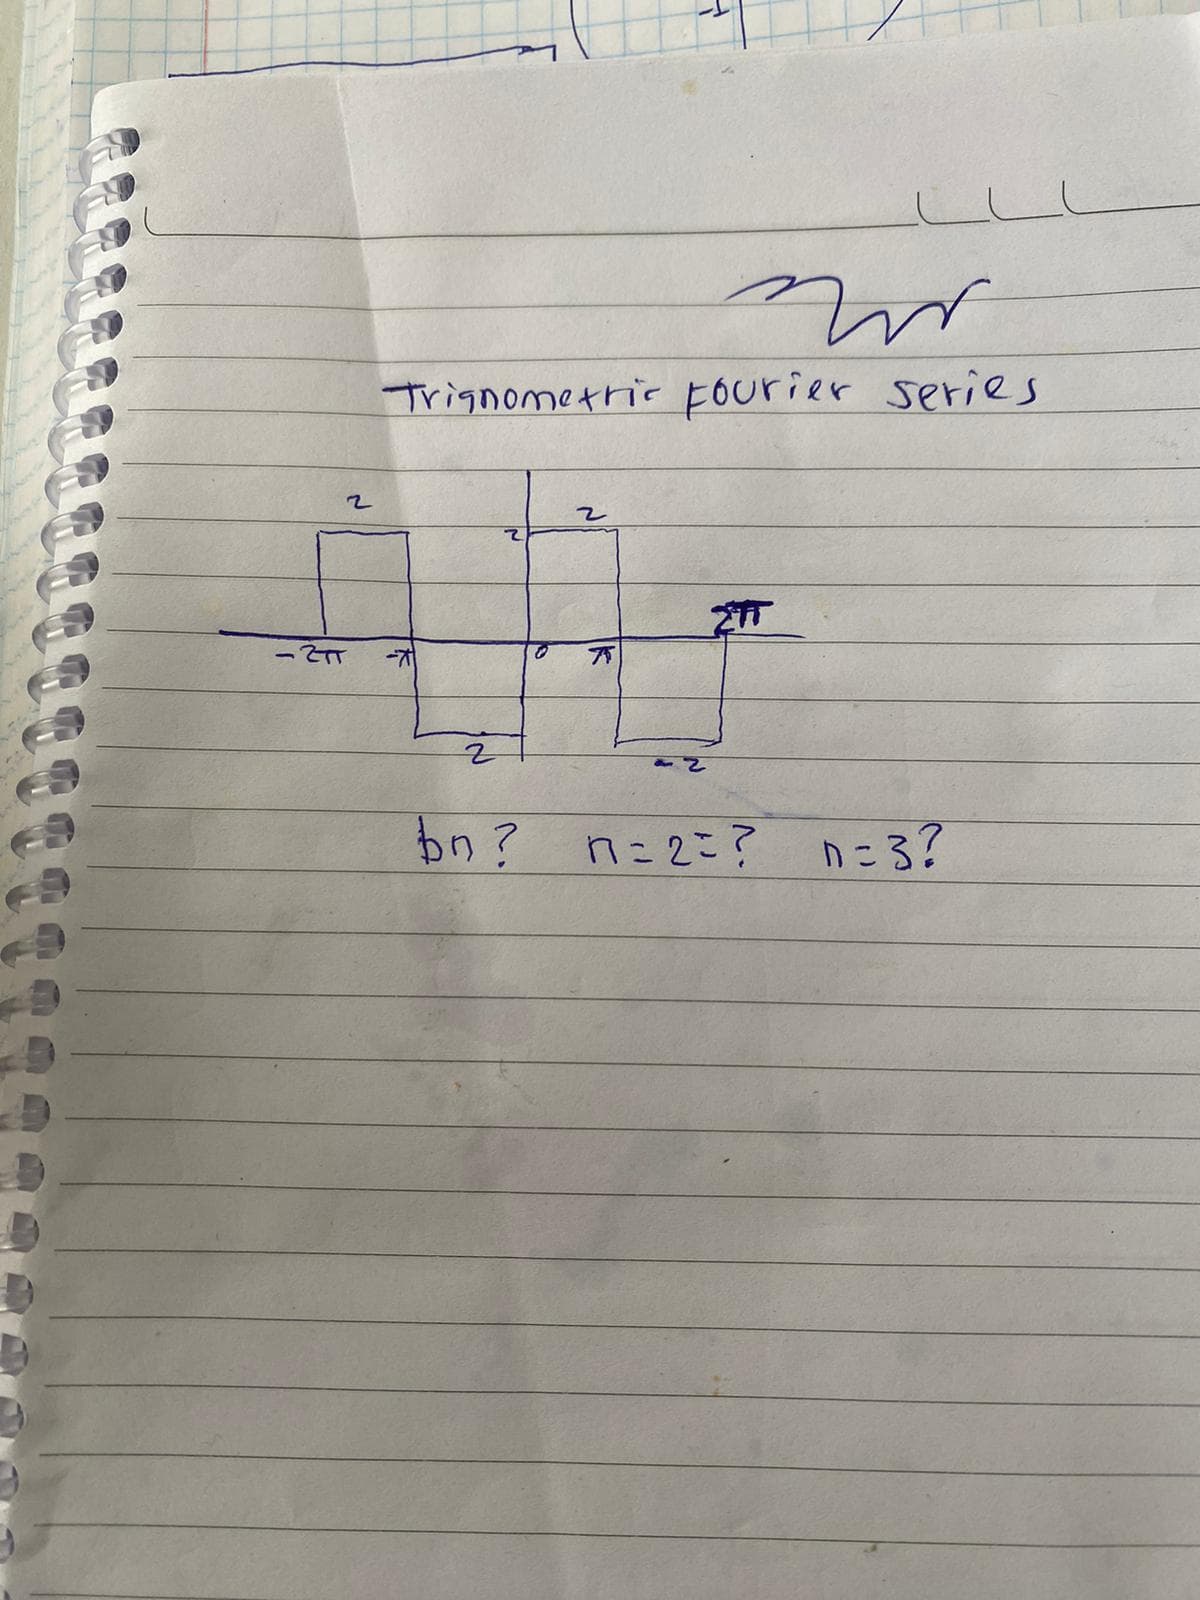 2
Mr
Trignometric Fourier series
-211 -7
2
ETT
2
bn? n=2=?
のころ?